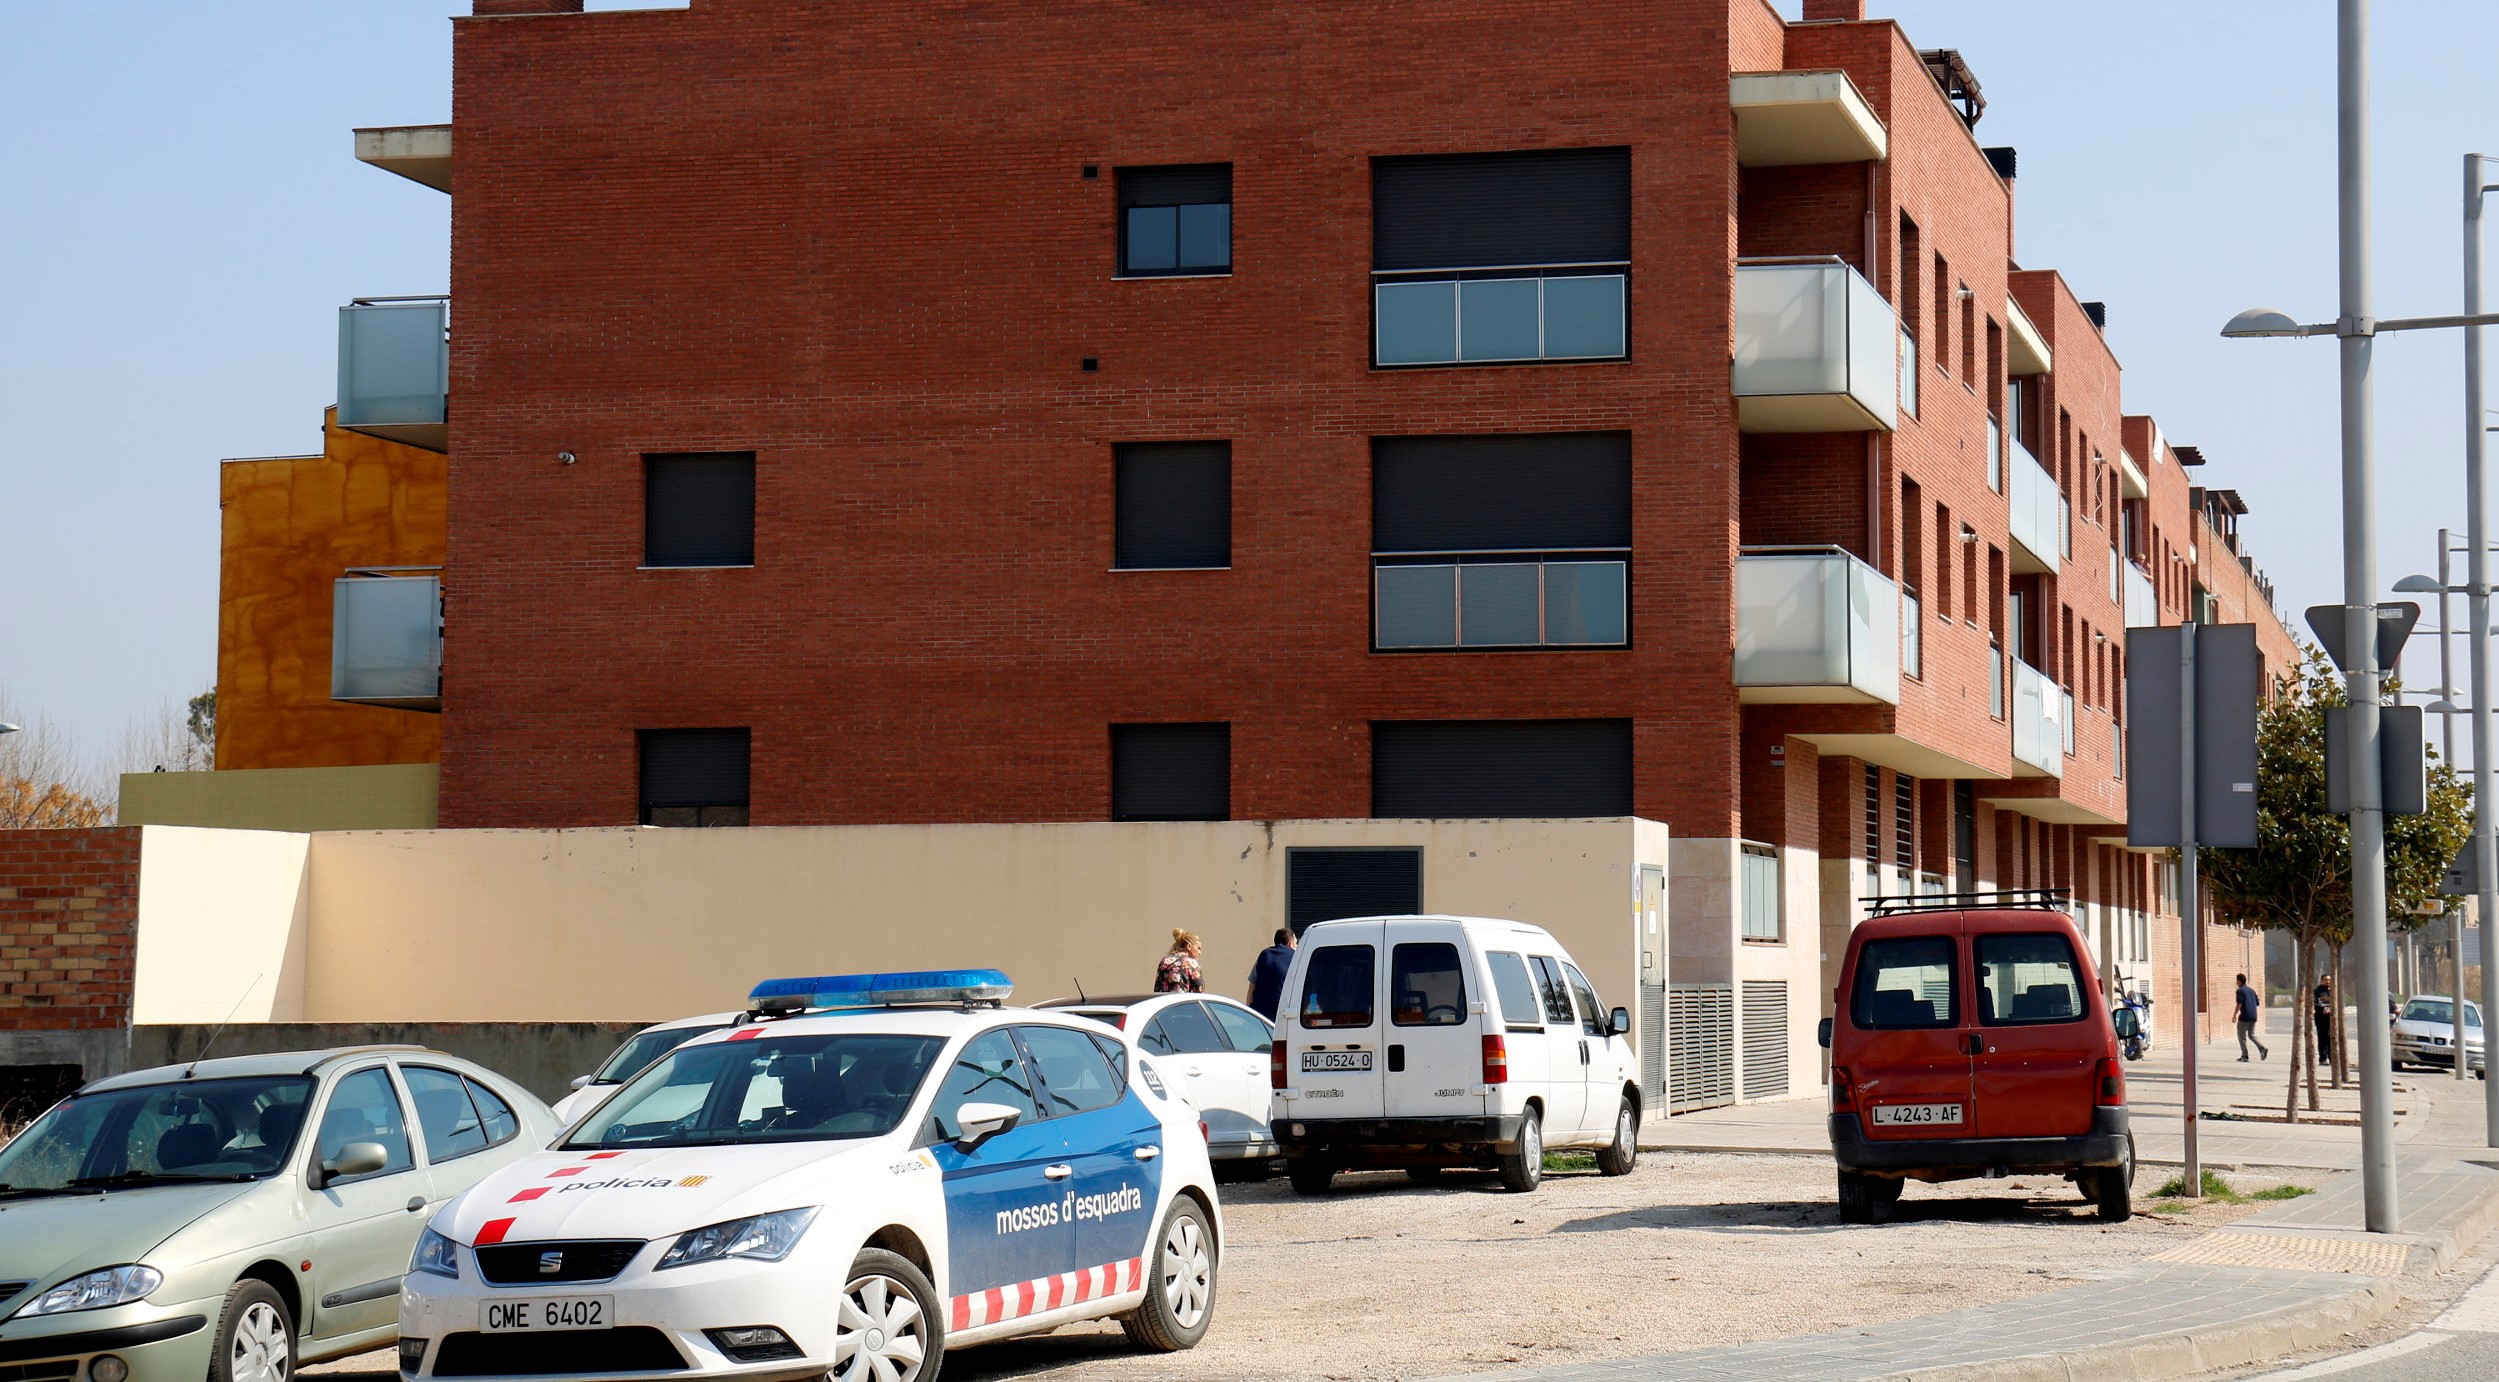 Els mossos investiguen una agressió al propietari d’un pis en un bloc okupat a Mollerussa